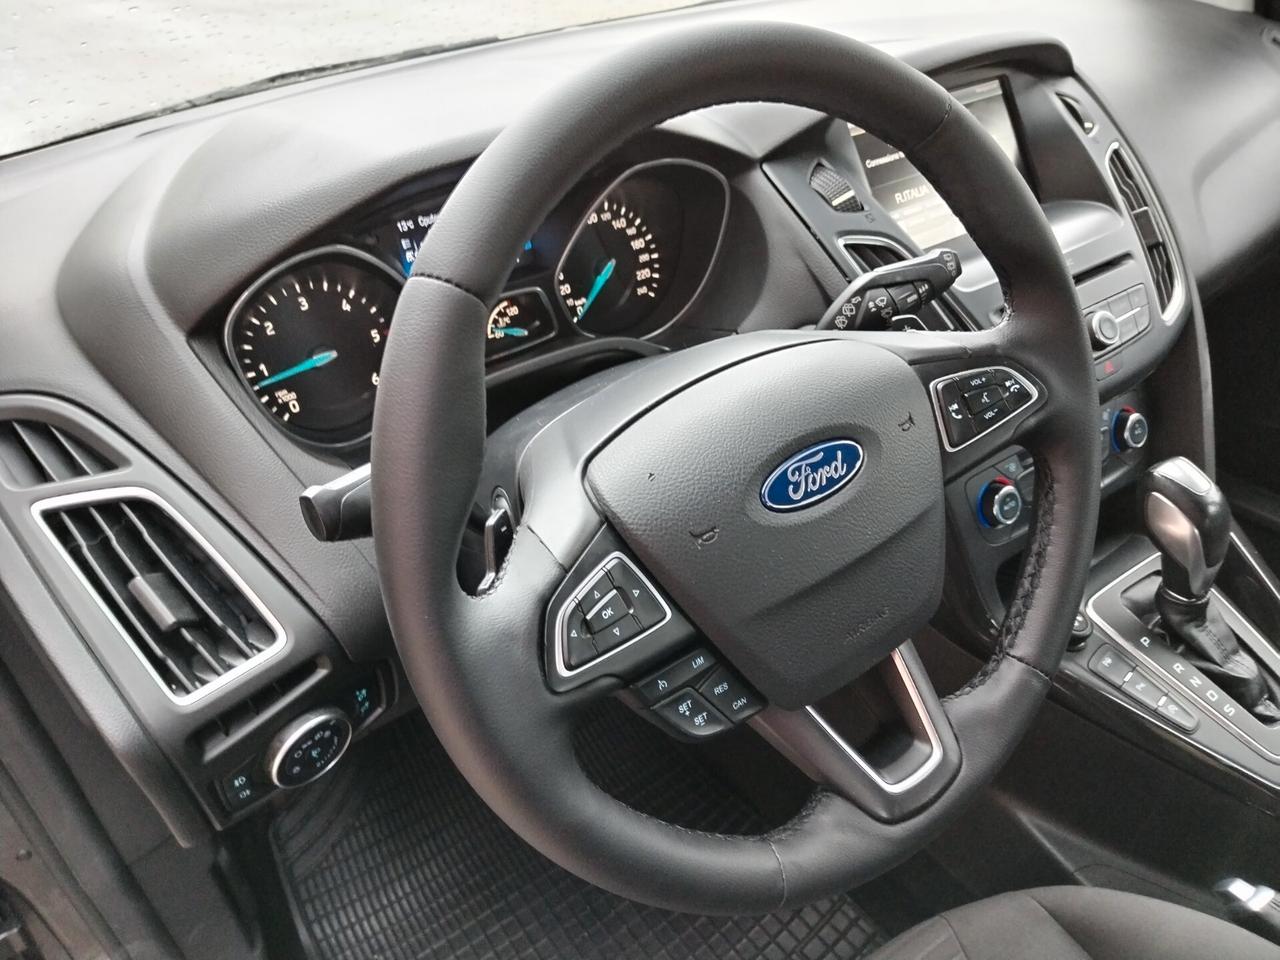 Ford Focus 1.5 TDCi 120 CV cambio automatico navigatore Titanium